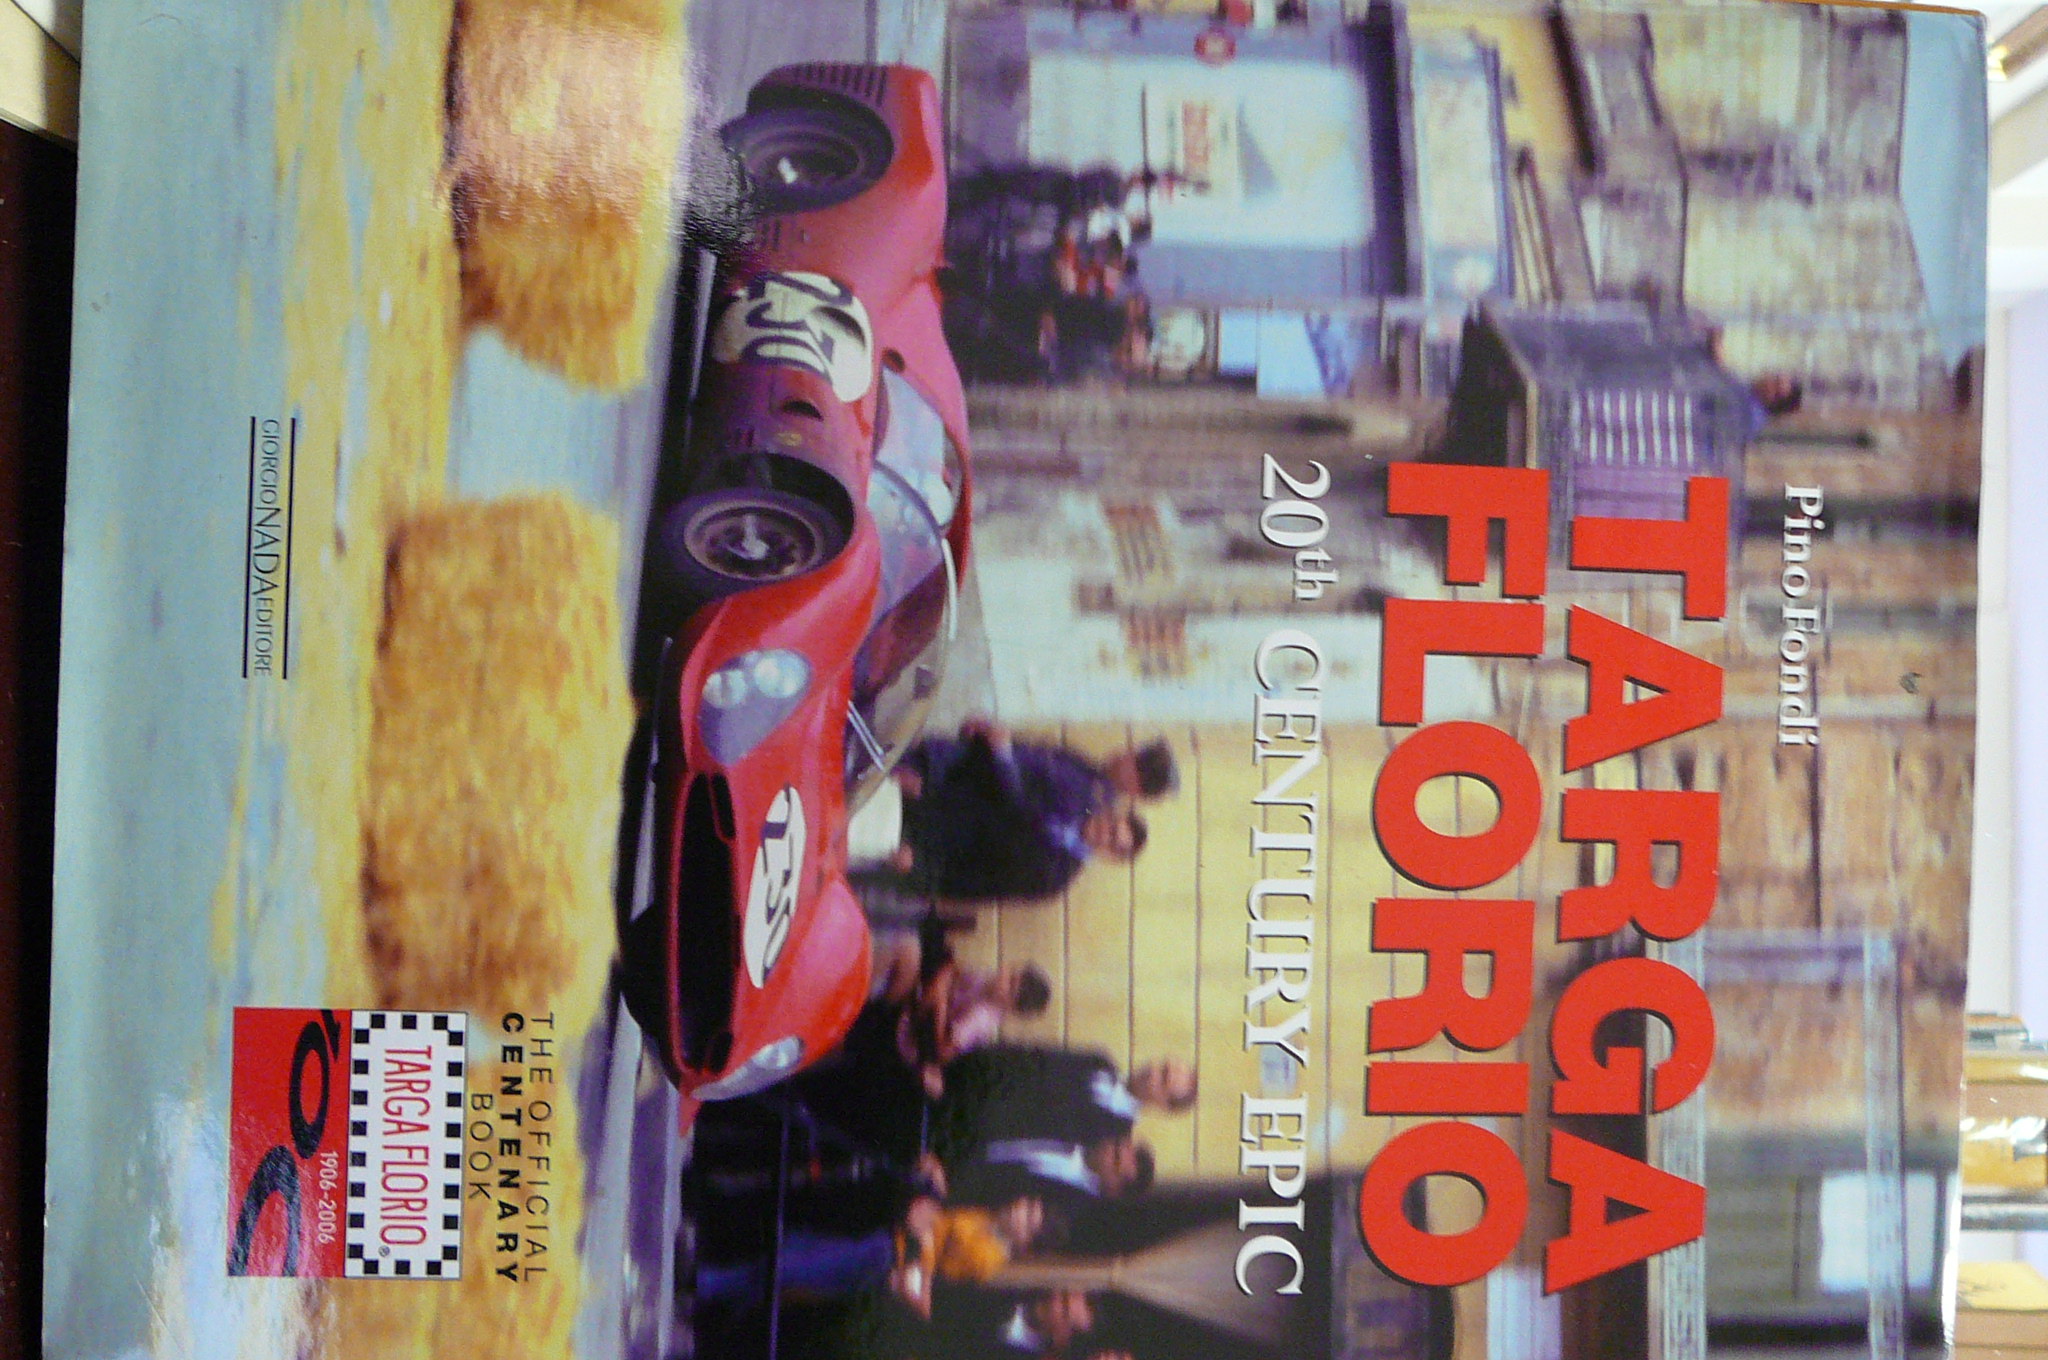 Targa Florio. 20th Century Epic The Official Centenary Book 1906-2006 - Pino Fondi